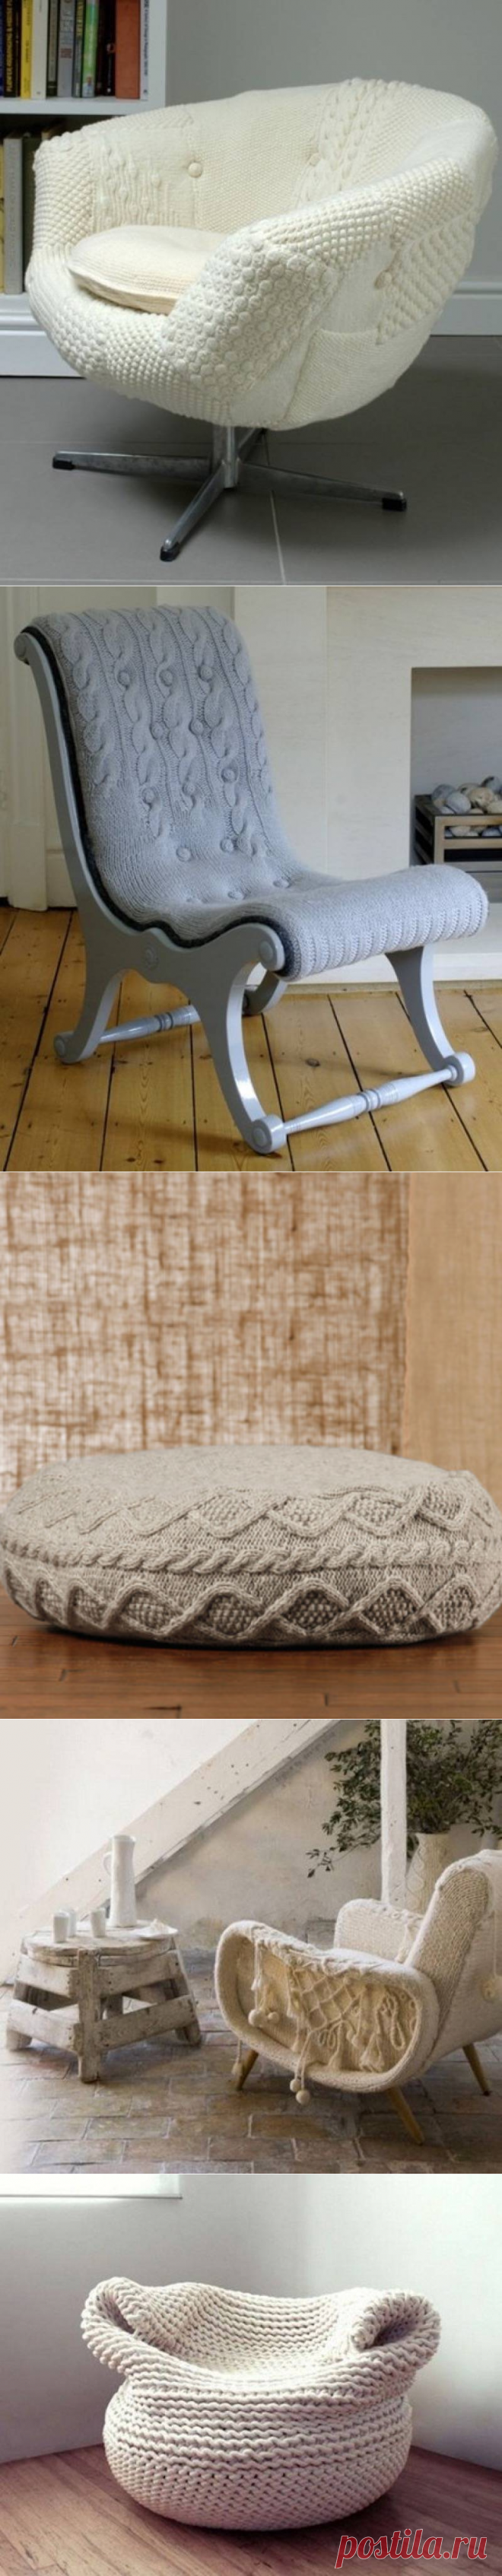 Вязание в интерьере: чехлы для зимней мебели